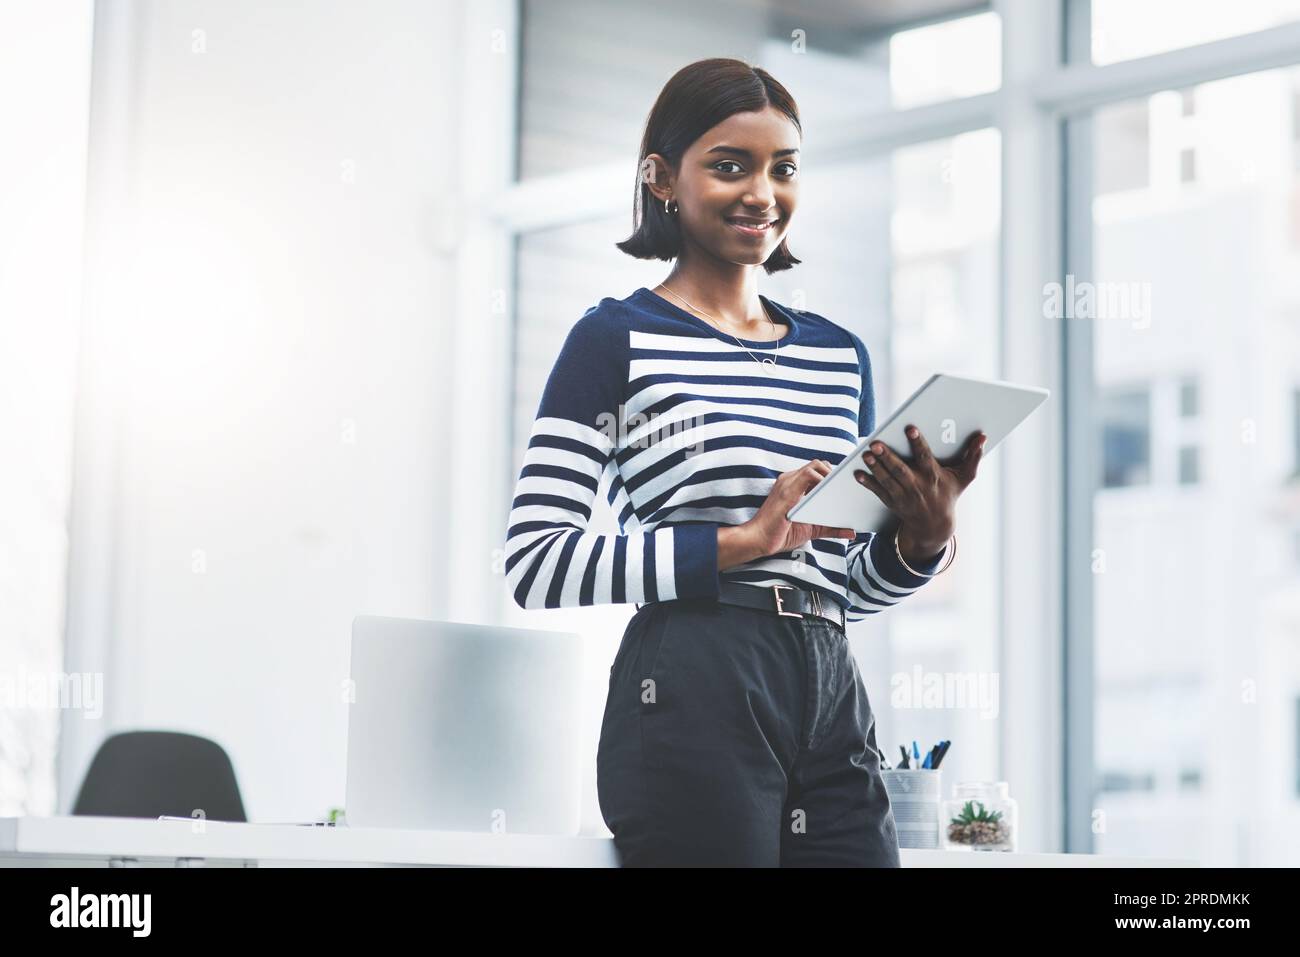 Legen Sie Ihre Erfolgschancen immer in Ihre eigenen Hände. Porträt einer jungen Geschäftsfrau, die in ihrem Büro ein digitales Tablet benutzt. Stockfoto